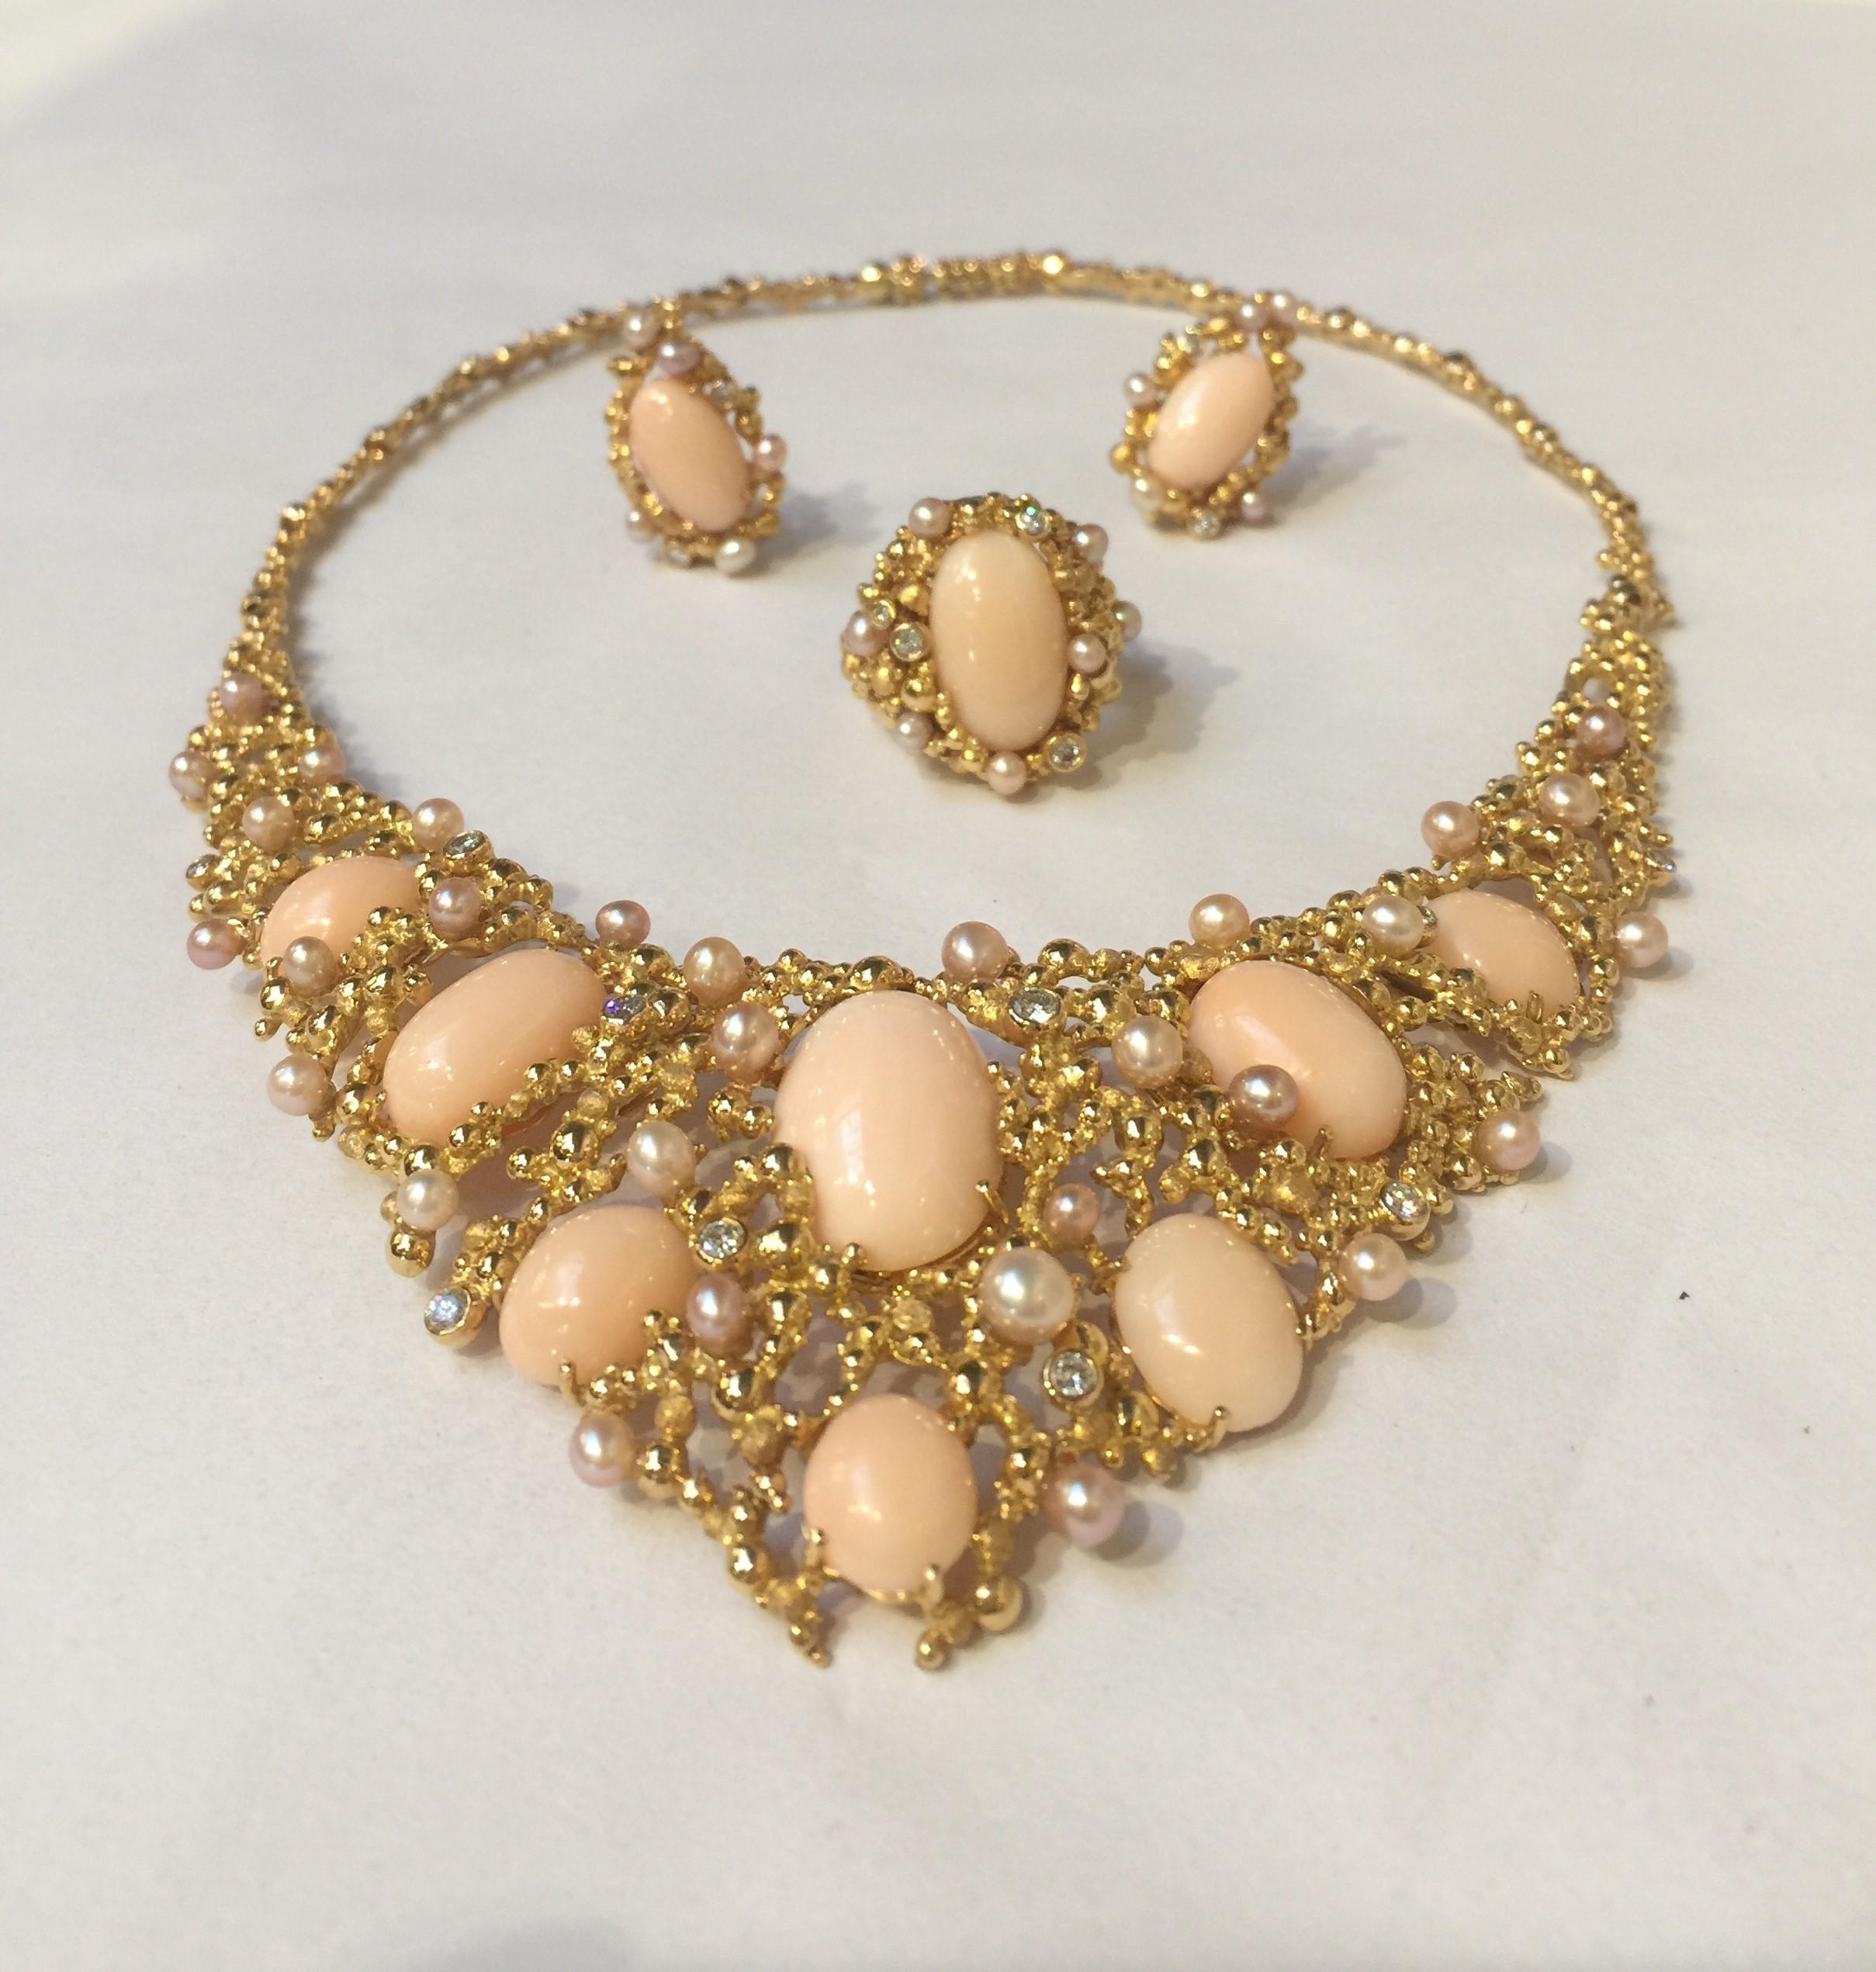 Une fantastique suite de bijoux du légendaire joaillier suisse Gilbert Albert, composée de corail peau d'ange rose, de perles de culture et de diamants, le tout serti dans de l'or jaune 18 carats. La suite comprend un grand collier à plastron, une